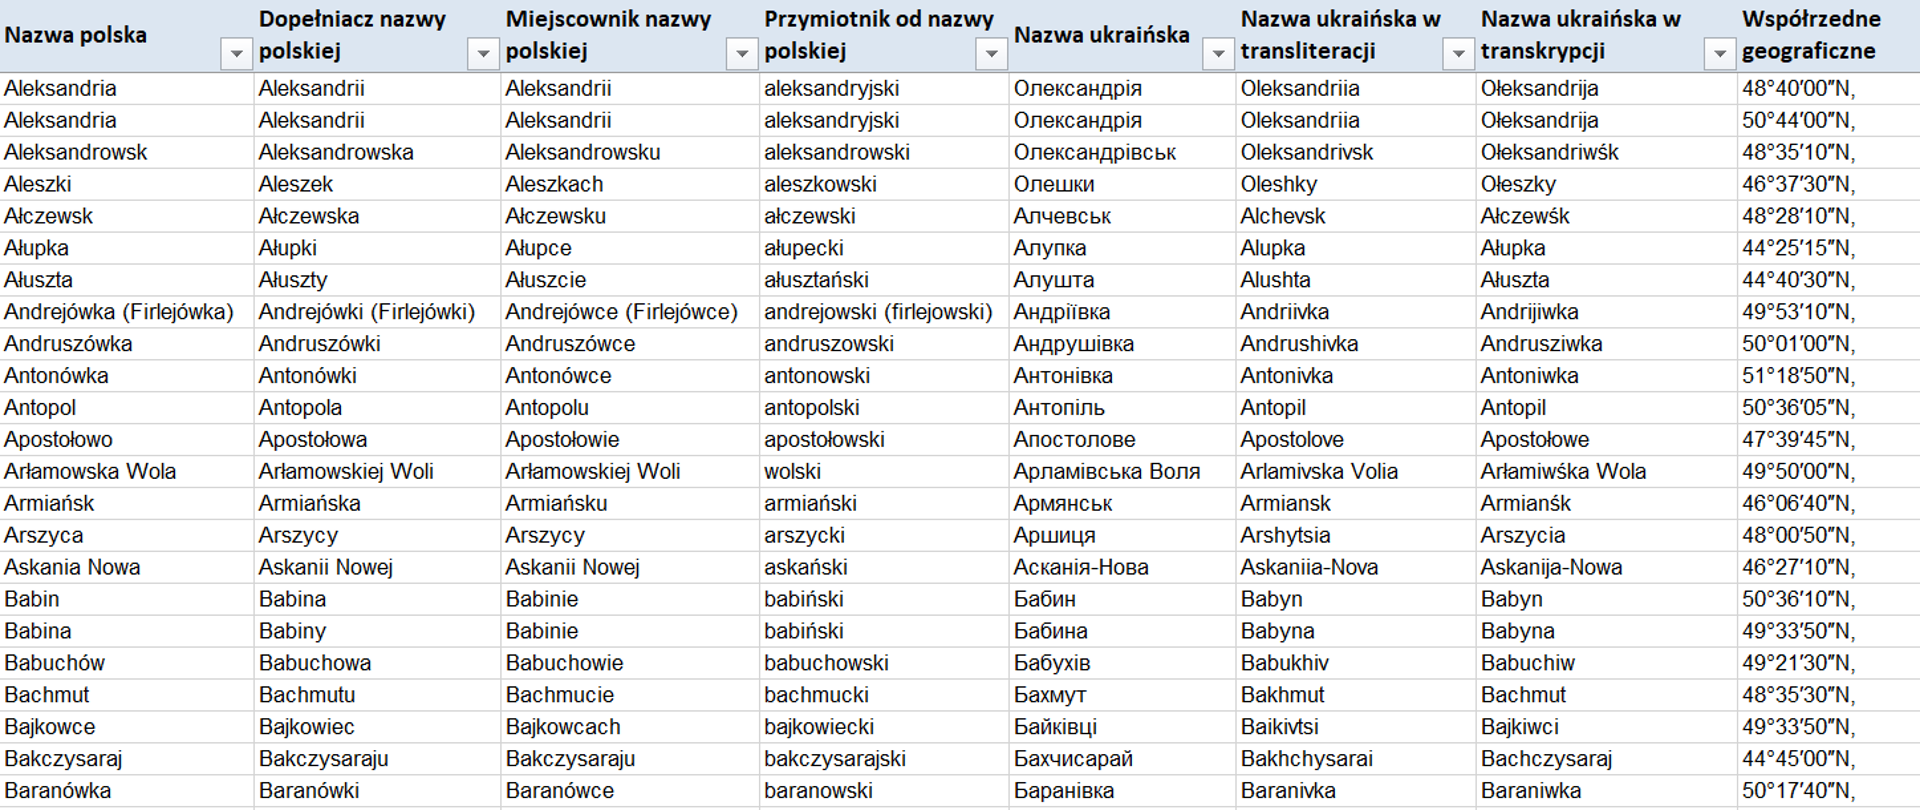 Ilustracja przedstawiająca zrzut fragmentu wykazu polskich nazw dla miejscowości z obszaru Ukrainy. Wszystkie dane przedstawione na rysunku znajdują się w tabeli w linku powyżej.